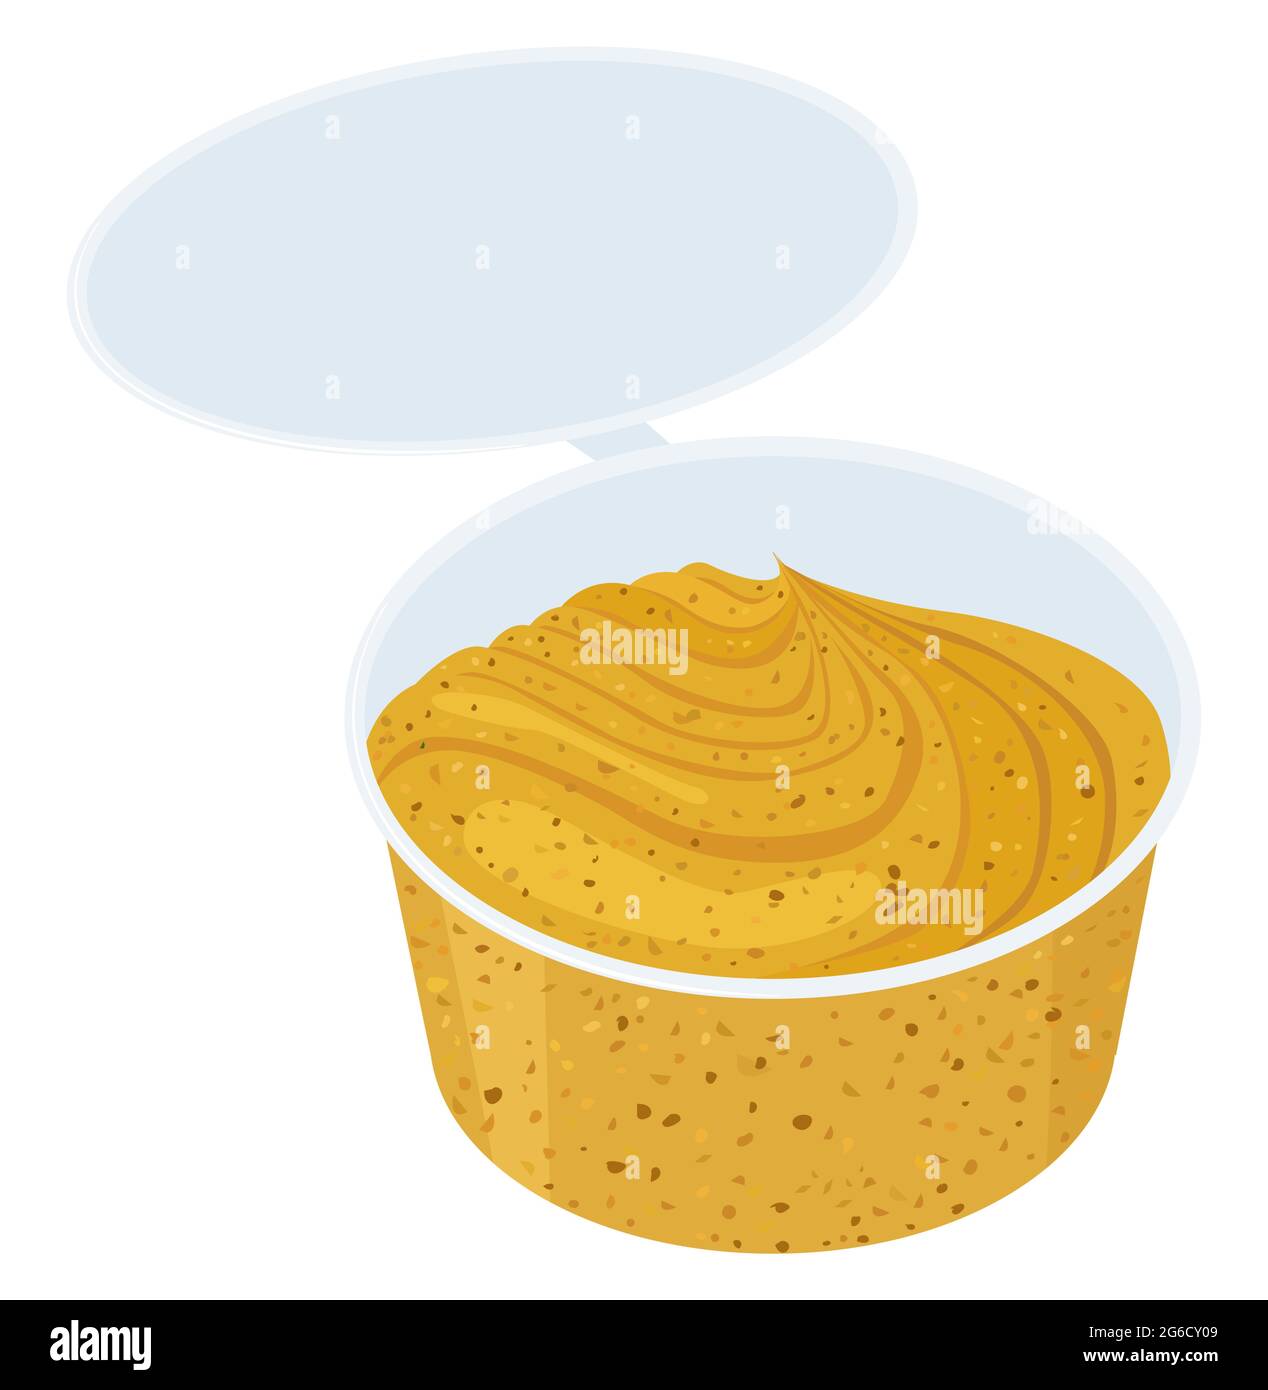 Sauce à la moutarde dans un petit bol en plastique sur fond blanc, délicieux condiment de nourriture de dessin animé. Illustration vectorielle. Illustration de Vecteur